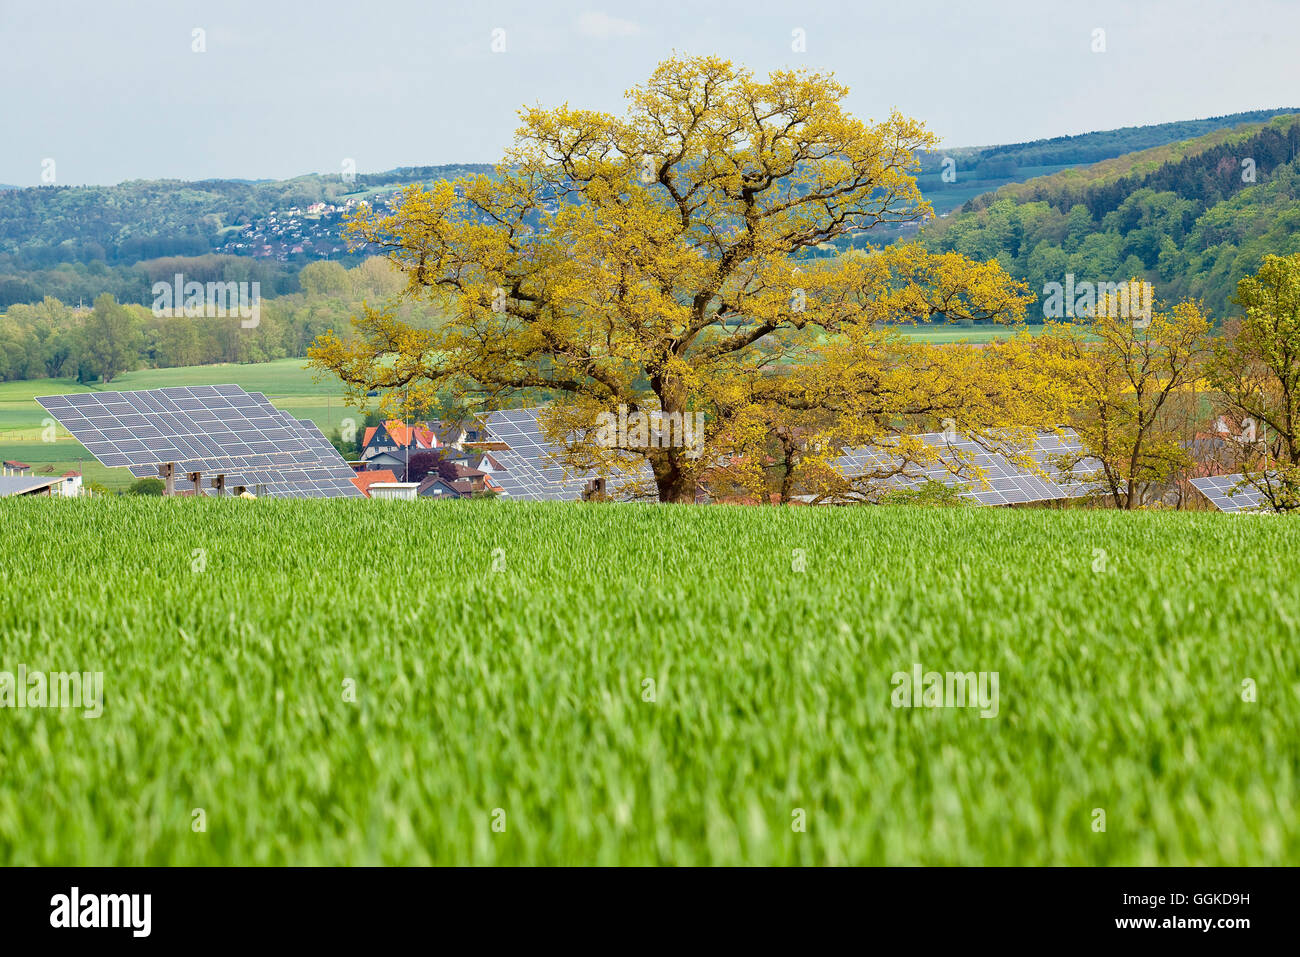 Solarpark im Herbst, Anraff, Edertal, Hessen, Deutschland, Europa Stockfoto